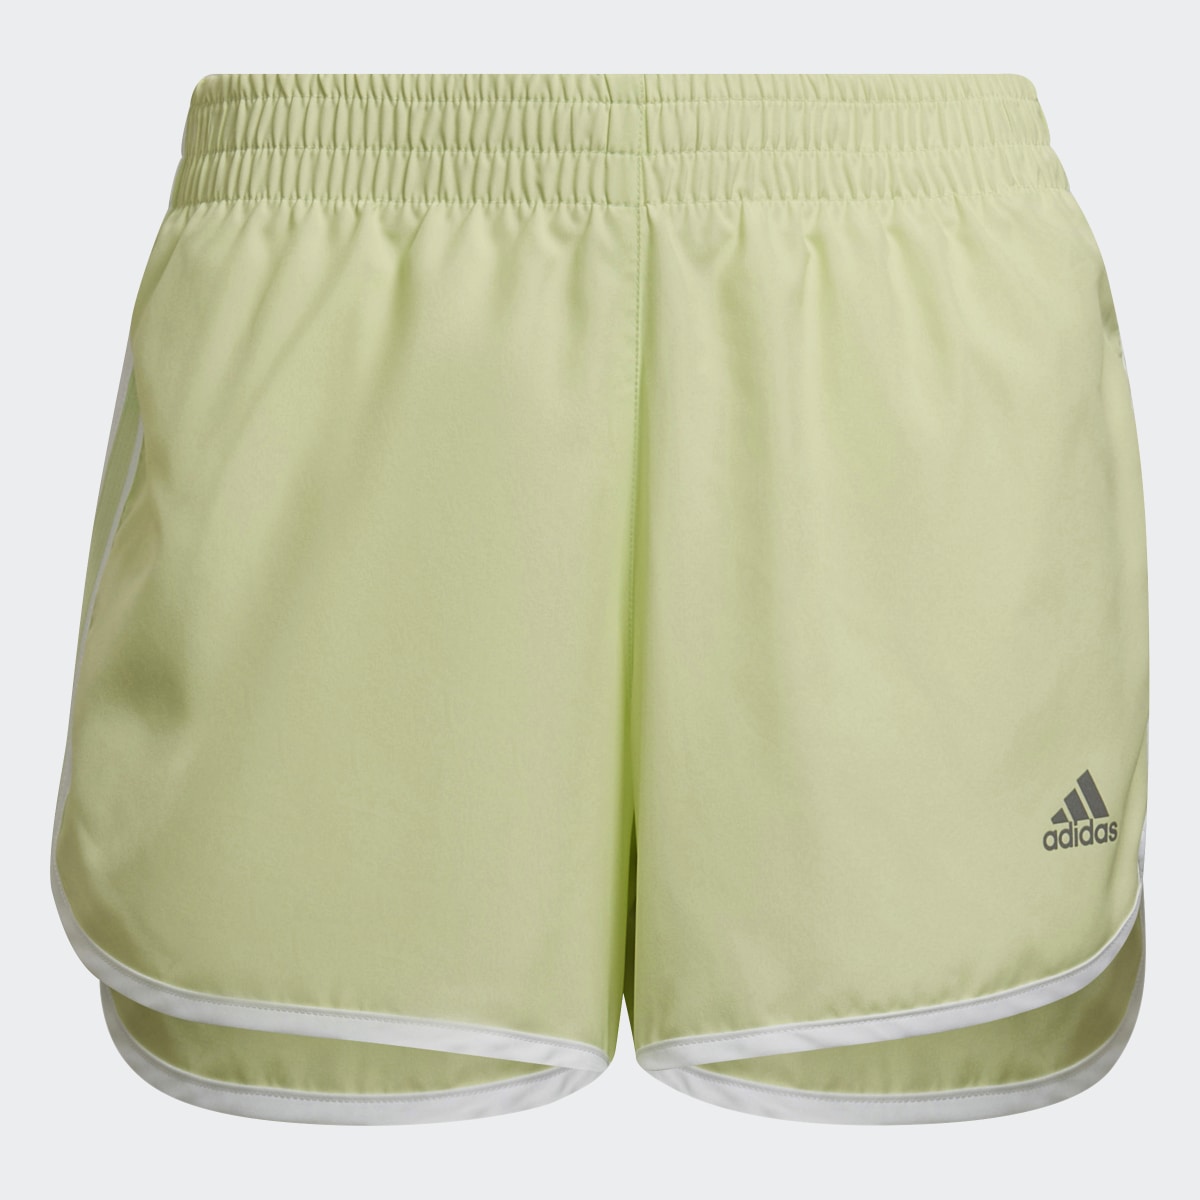 Adidas Marathon 20 Shorts. 4